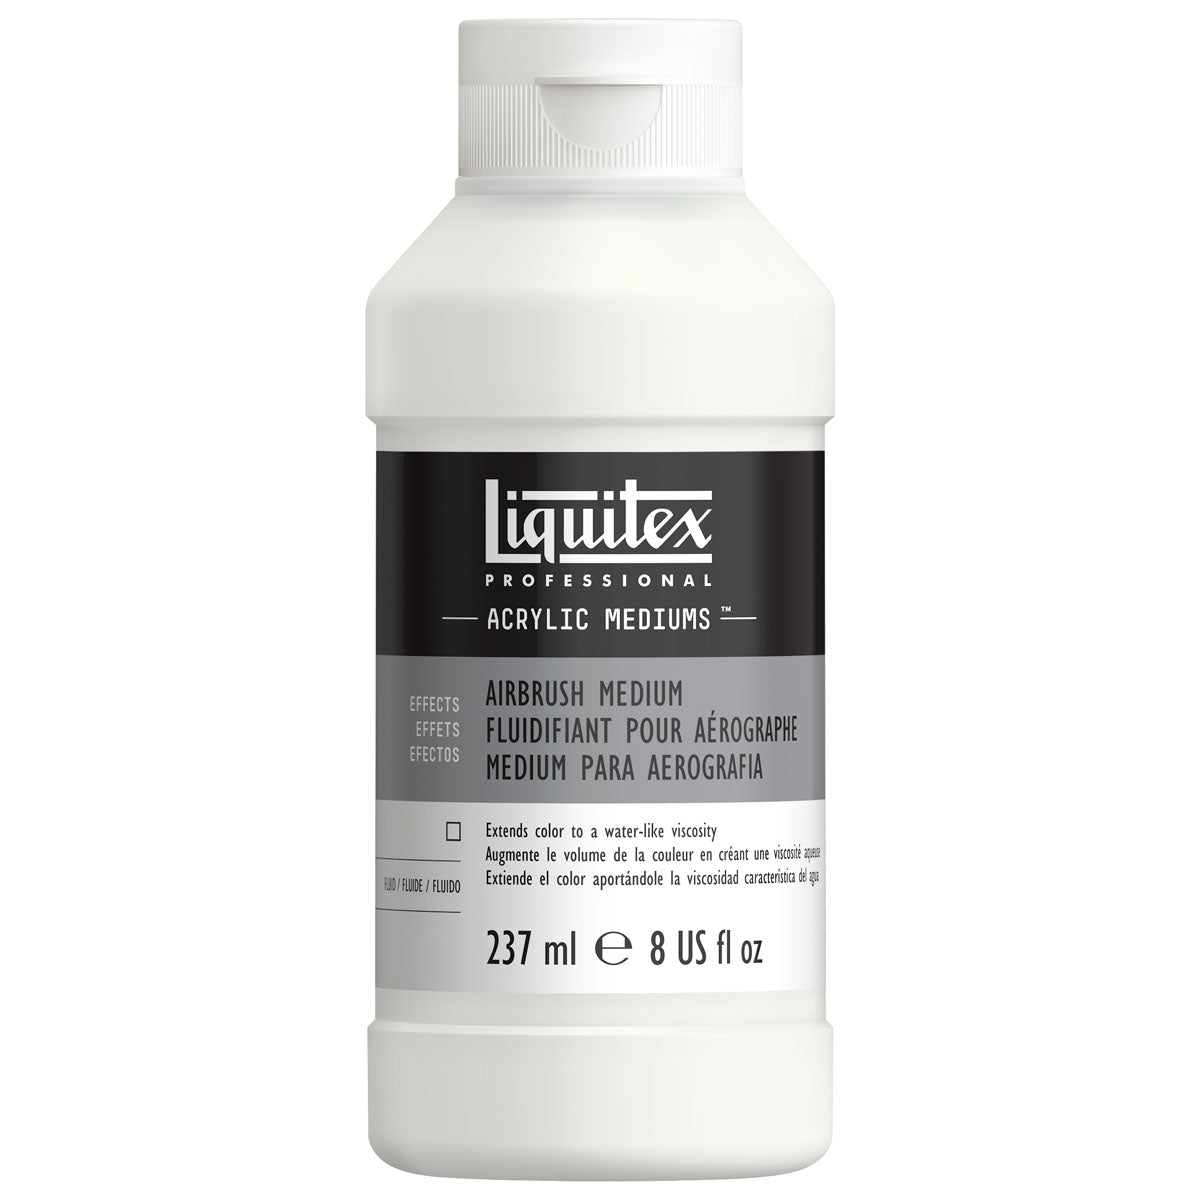 Liquitex - Airbrush Medium 237 ml